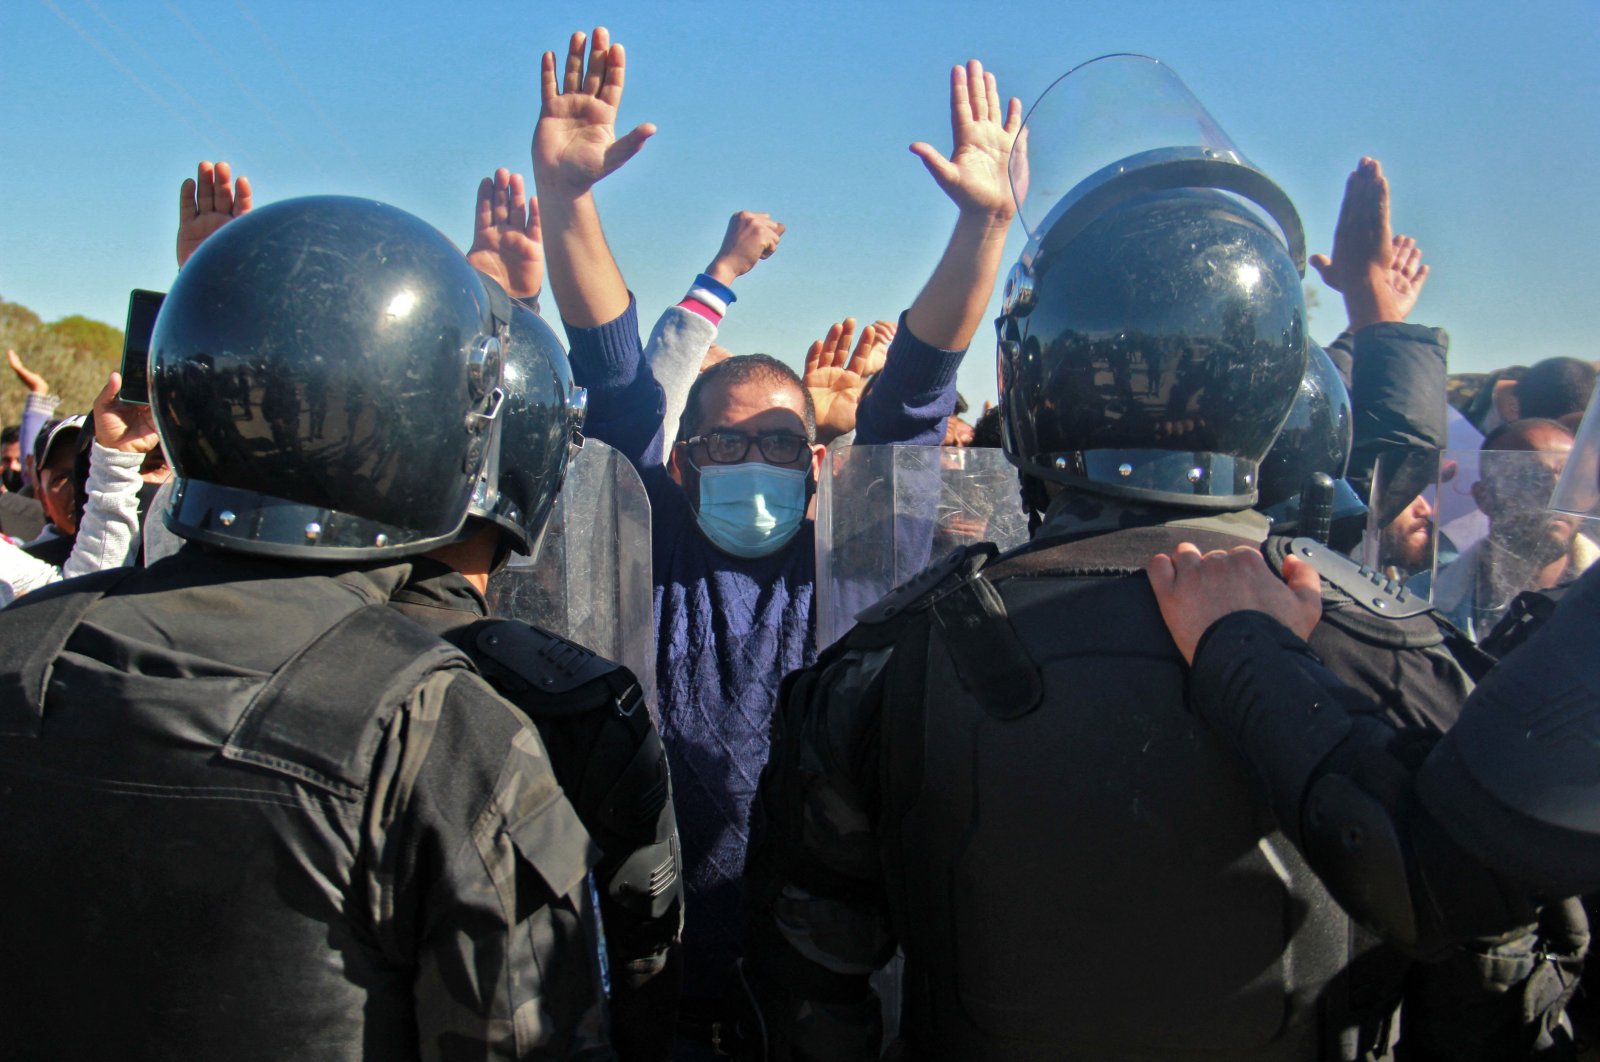 Pengadilan militer Tunisia meningkat pada tingkat yang mengkhawatirkan: Amnesti